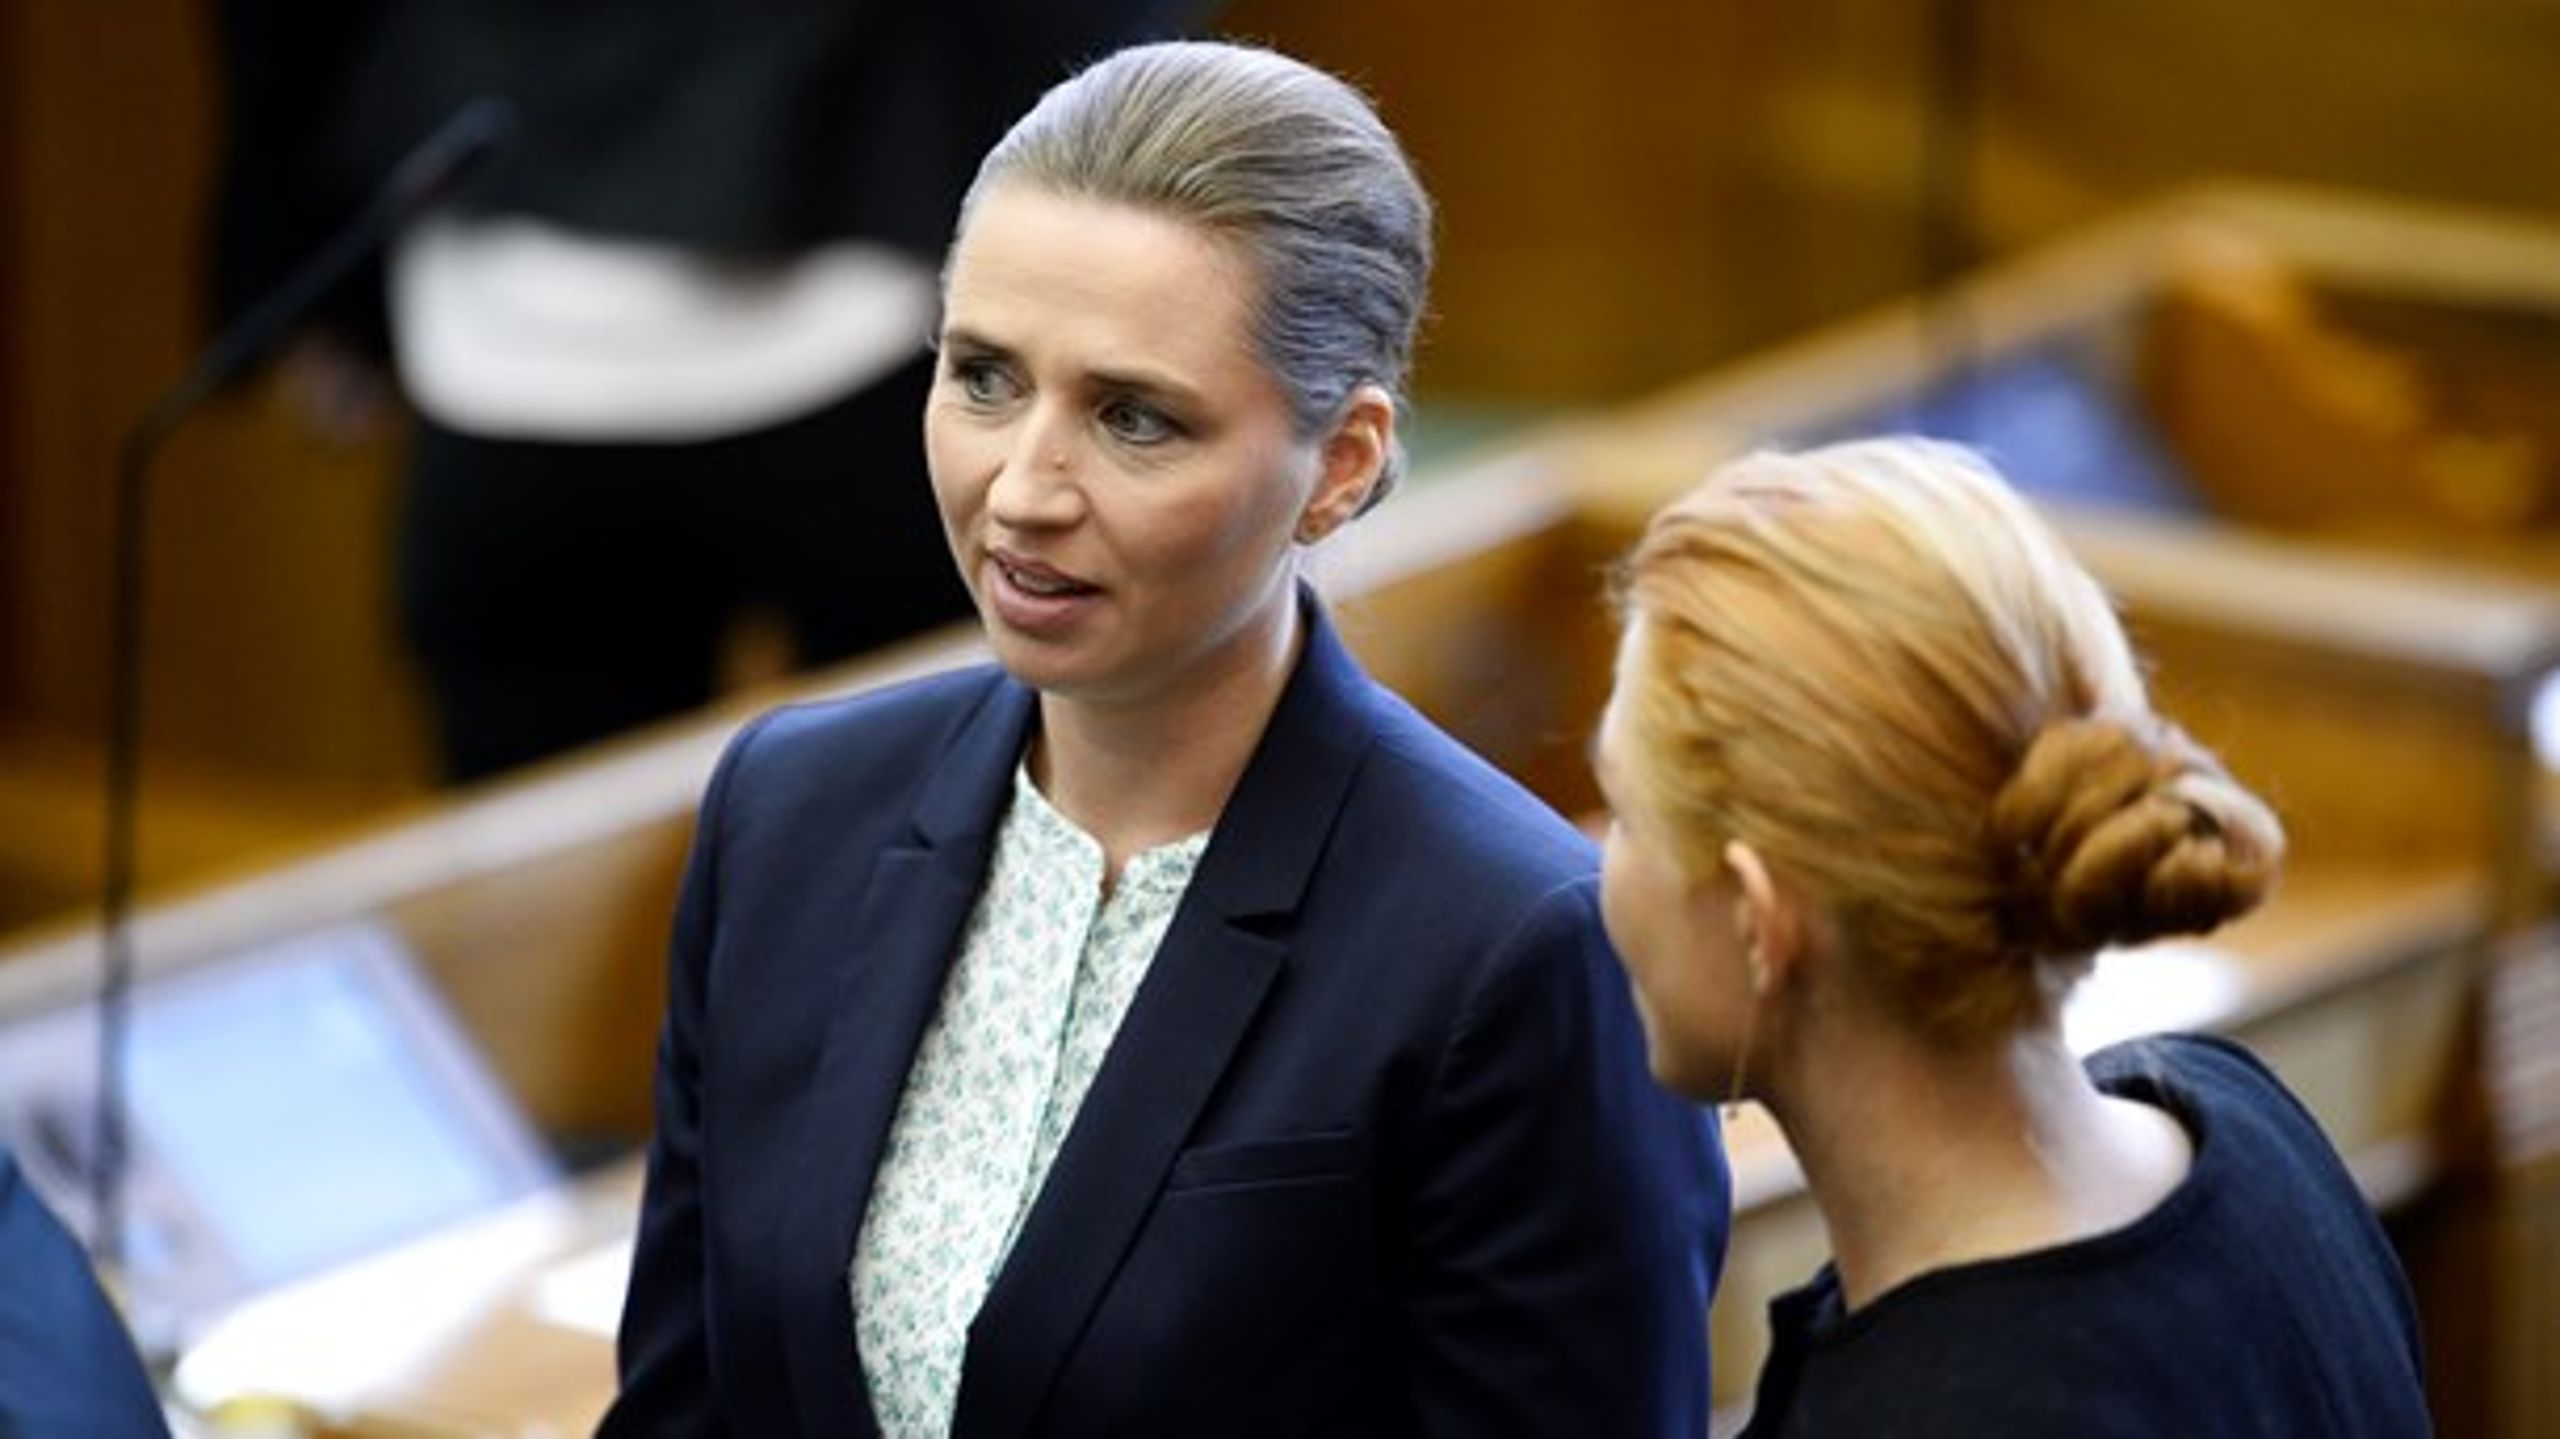 Mette Frederiksen og Inger Støjberg var&nbsp;de to mest omtalte kvinder i valgkampsdækningen.&nbsp;